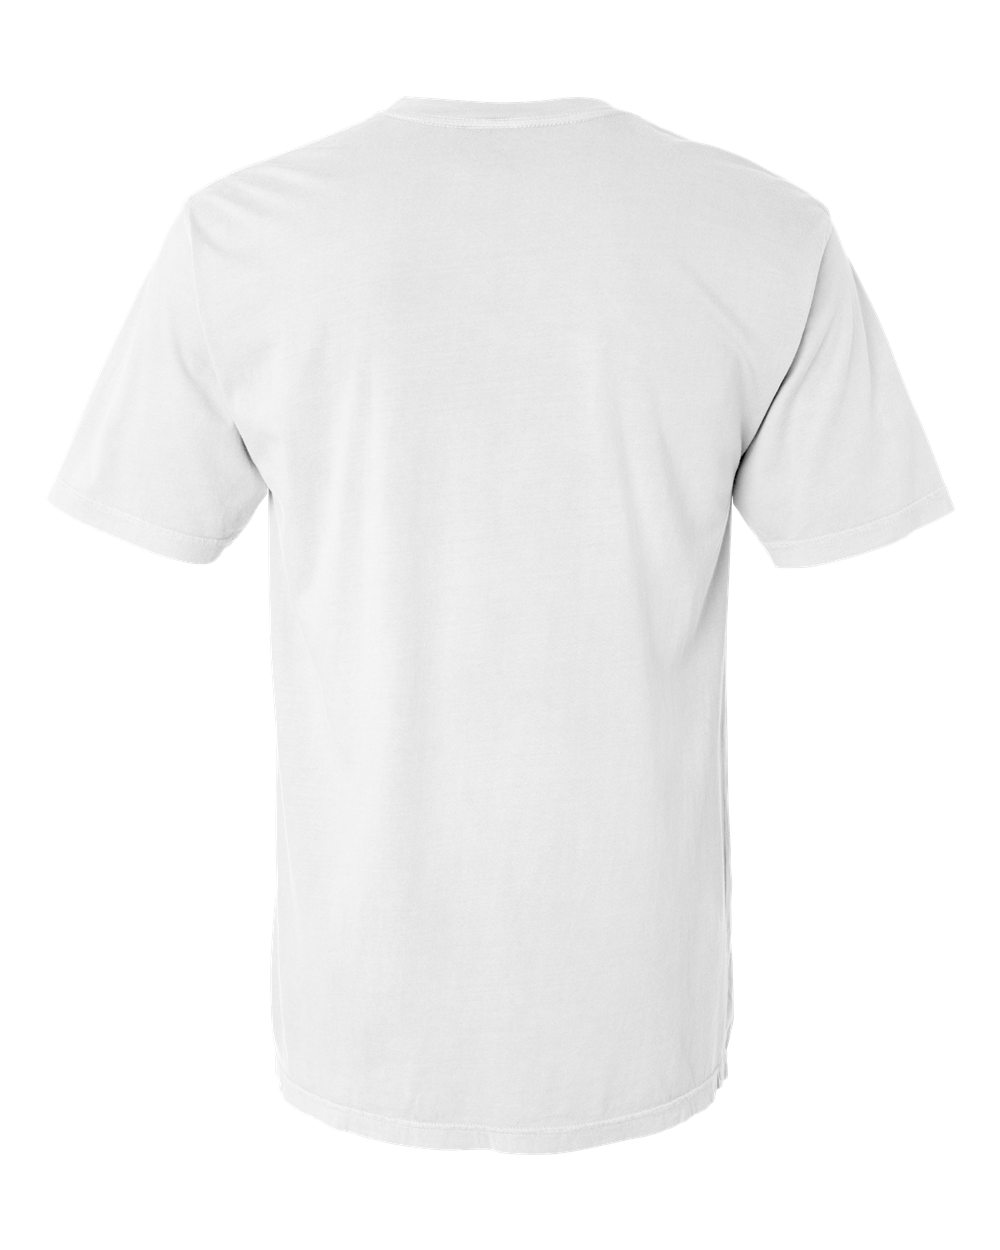 Garment-Dyed Lightweight T-Shirt - 4017-Comfort Colors